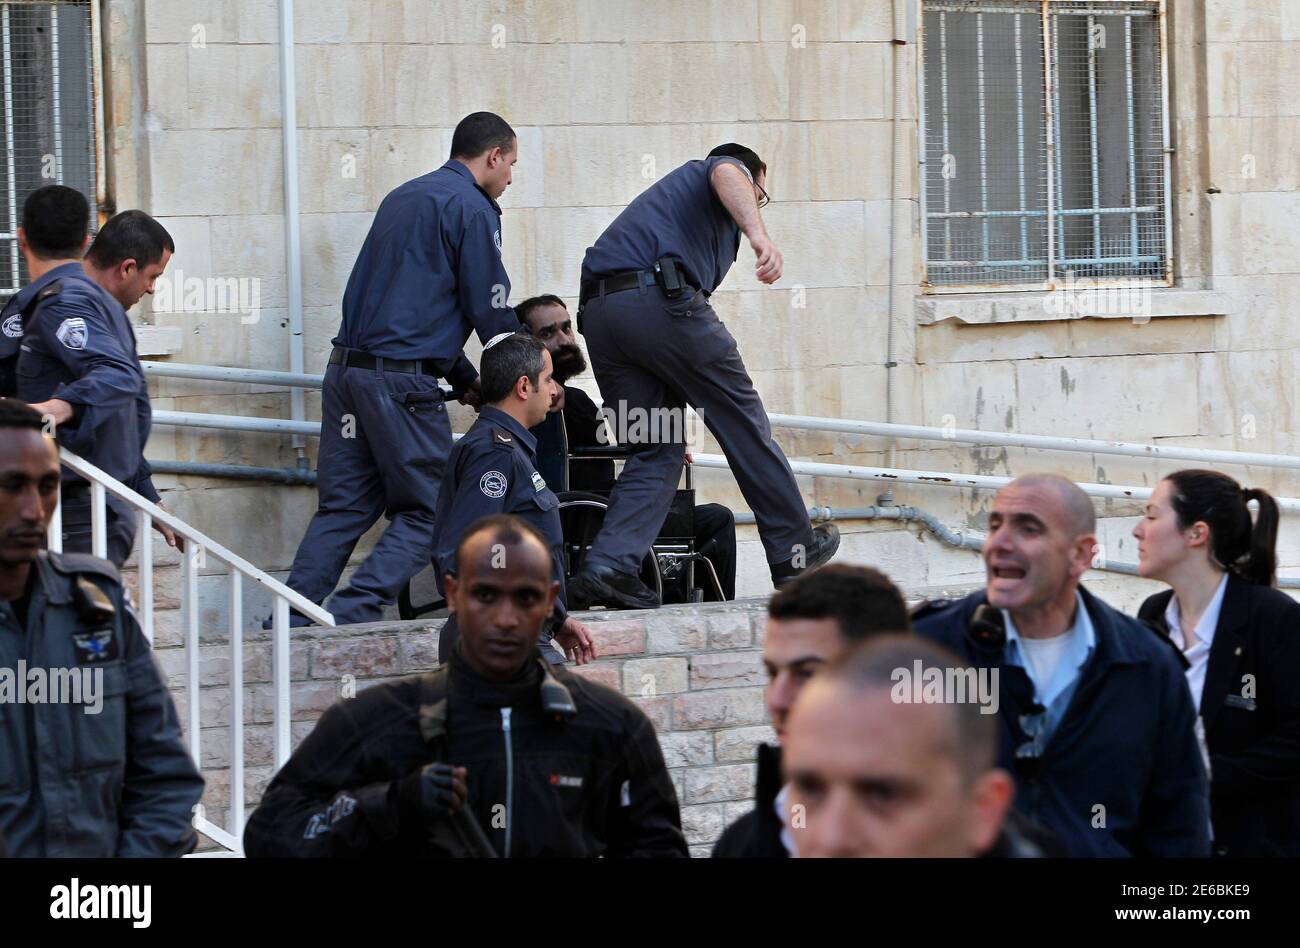 Israelischen Gefängnis schützt Rad Samer al-Issawi, einer der vier Palästinenser durch Israel, eine intermittierende Hungerstreik wurde, gehalten, als er Jerusalem Amtsgericht 19. Februar 2013 geht. Hunderte von palästinensischen Gefangenen in israelischen Gefängnissen erklärte ein eintägiger schnell am Dienstag in Solidarität mit vier Insassen, deren Hungerstreik anti-israelische Proteste im besetzten Westjordanland angeheizt hat. Gaunt und Rollstuhl, Issawi erschien am Dienstag vor dem Zivilgericht Jerusalem, die verzögerte Freigabe ihn für mindestens einen weiteren Monat. REUTERS/Ammar Awad (JERUSALEM - Tags: Politik Unruhen) Stockfoto